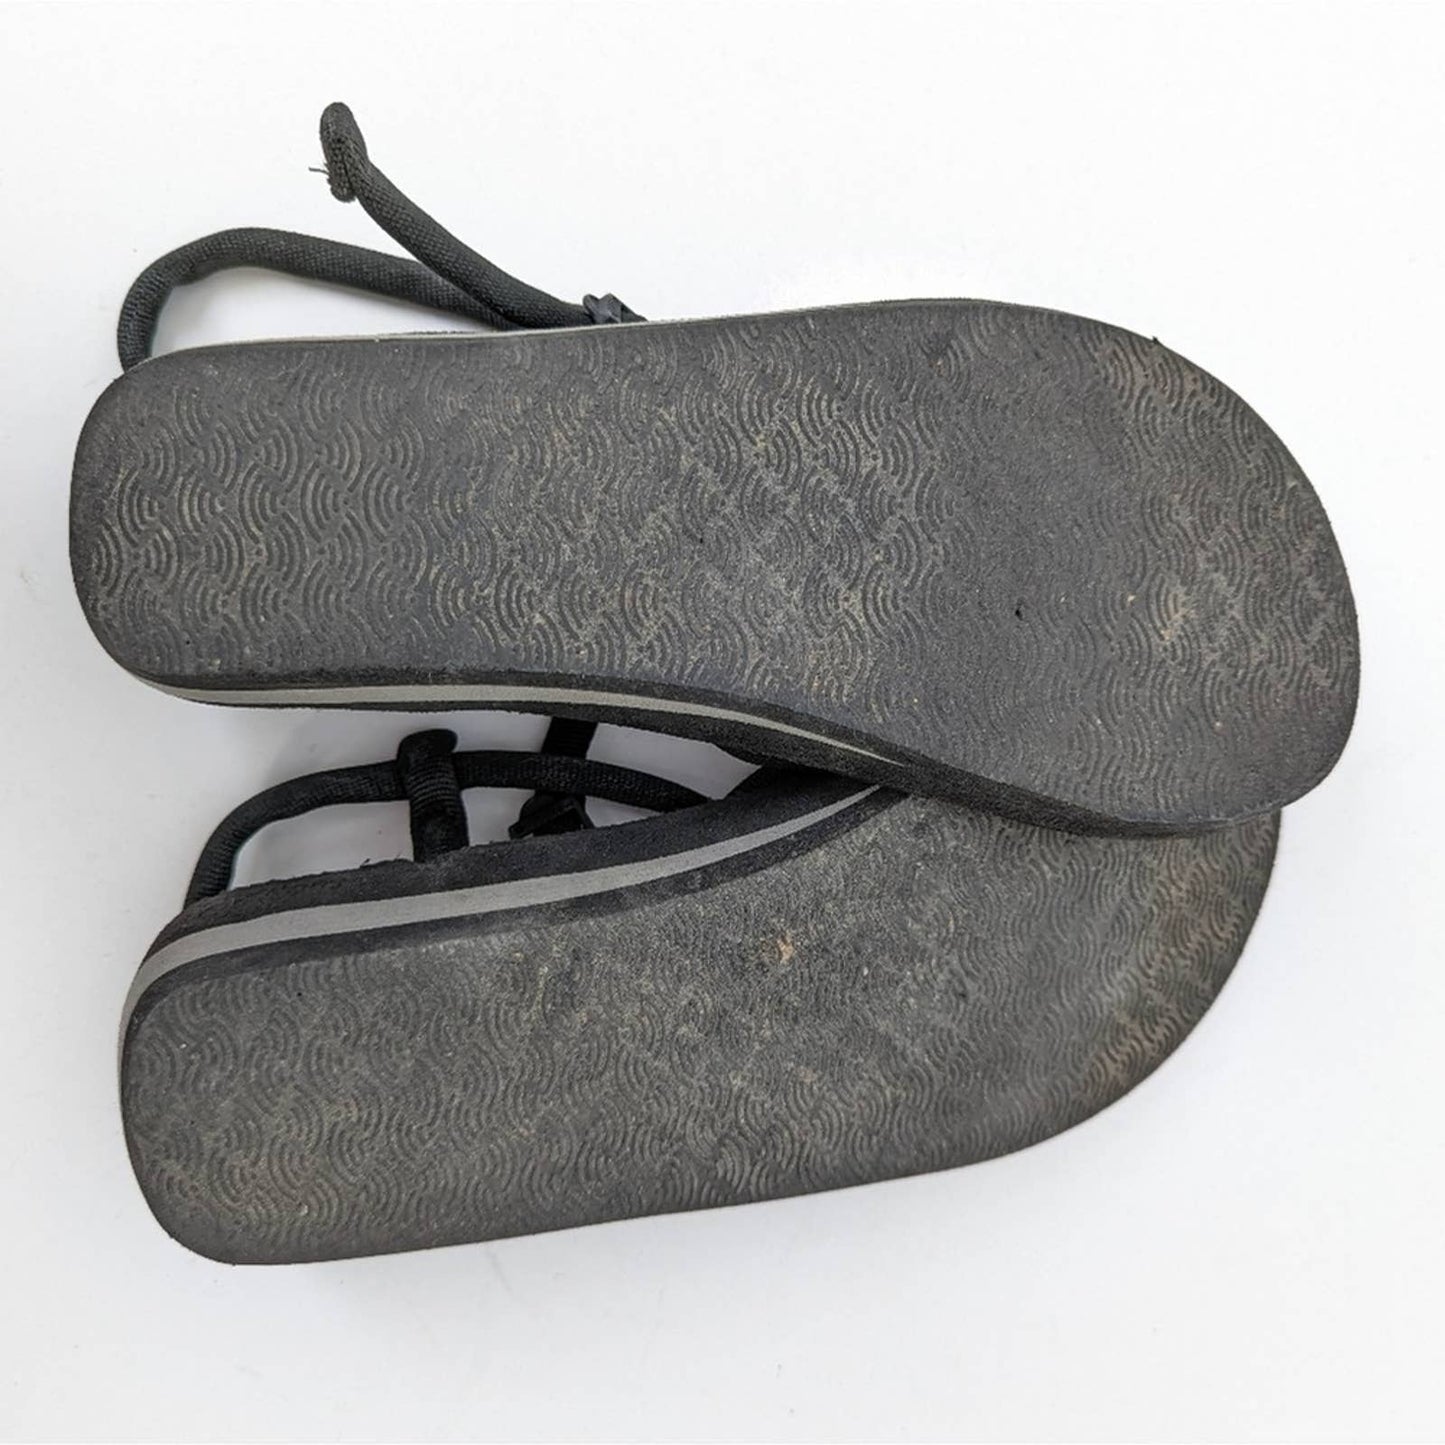 O'Rageous Antigua Thong Sandals - 8